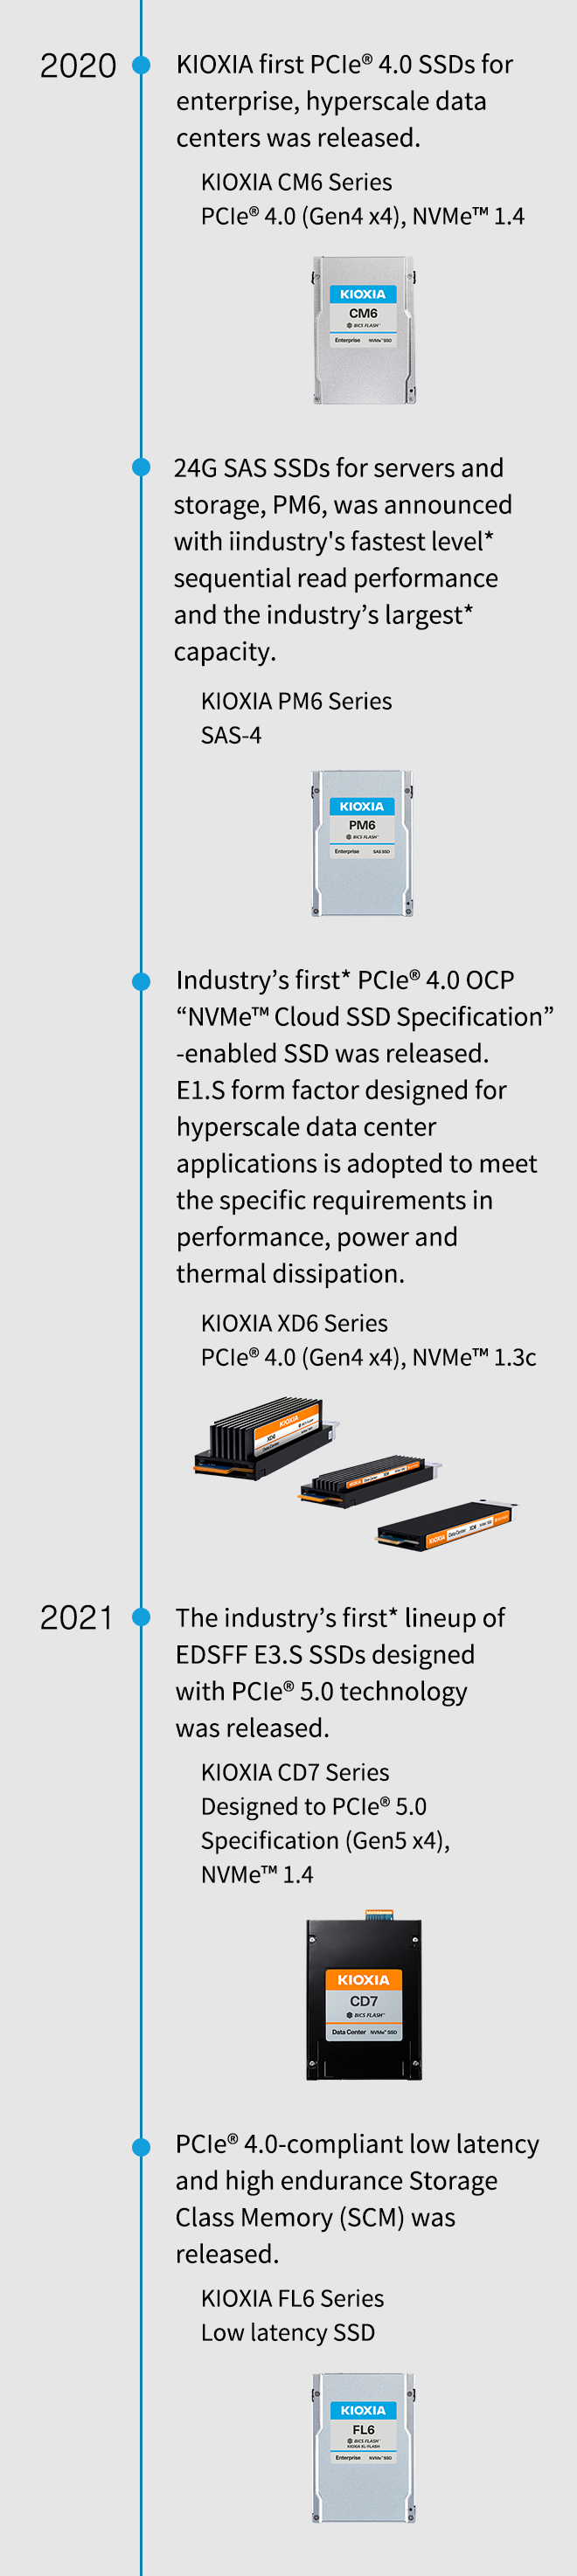 2020. Foram lançadas as primeiras SSD PCIe® 4.0 KIOXIA para empresas, centros de dados e hiperescala. Série KIOXIA CM6 PCIe® 4.0 (4.ª Geração x4), NVMe™ 1.4. As SSD SAS 24G para servidores e armazenamento, PM6, foram anunciadas com o desempenho de leitura sequencial de nível mais rápido* da indústria e a maior capacidade* da indústria. Série KIOXIA PM6 SAS-4. Foi lançada a primeira SSD ativada pela “especificação de nuvem NVMe™” PCIe® 4.0 OCP da indústria*. O fator de forma E1.S concebido para aplicações de centros de dados em hiperescala é adotado para cumprir os requisitos específicos em termos de desempenho, potência e dissipação térmica. Série KIOXIA XD6 PCIe® 4.0 (4.ª Geração x4), NVMe™ 1.3c. 2021. Foi lançada a primeira gama de SSD EDSFF E3.S da indústria* concebida com a tecnologia PCIe® 5.0. KIOXIA CD7 concebida para a especificação PCIe® 5.0 (5.ª Geração x4), NVMe™ 1.4. Foi lançada a memória de classe de armazenamento (SCM) de baixa latência e alta resistência compatível com PCIe® 4.0. SSD de baixa latência da série KIOXIA FL6